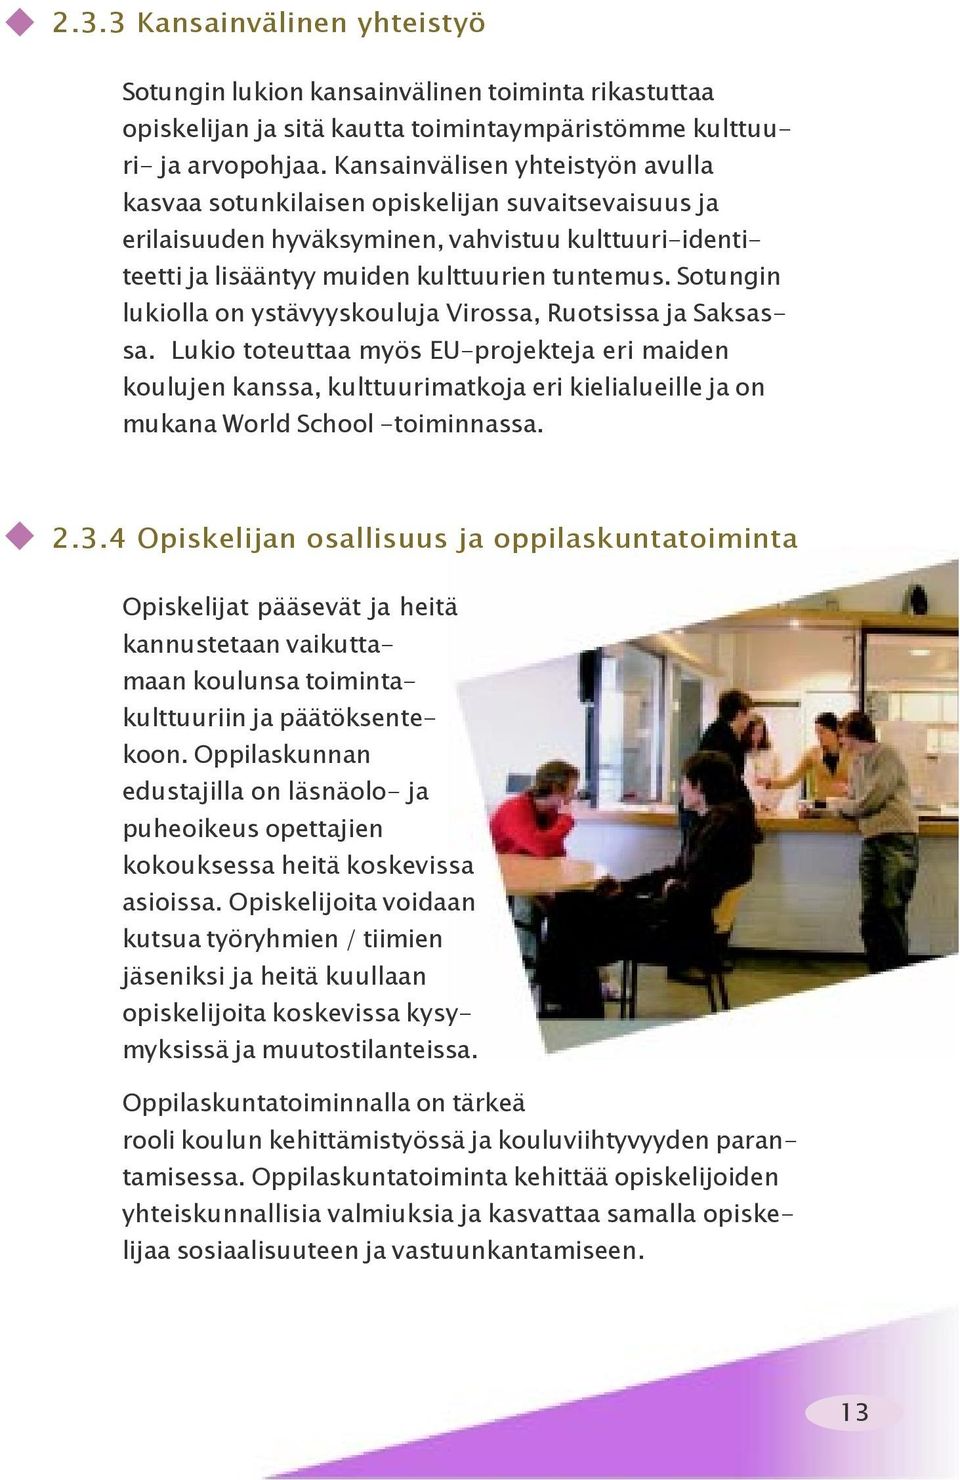 Sotungin lukiolla on ystävyyskouluja Virossa, Ruotsissa ja Saksassa.